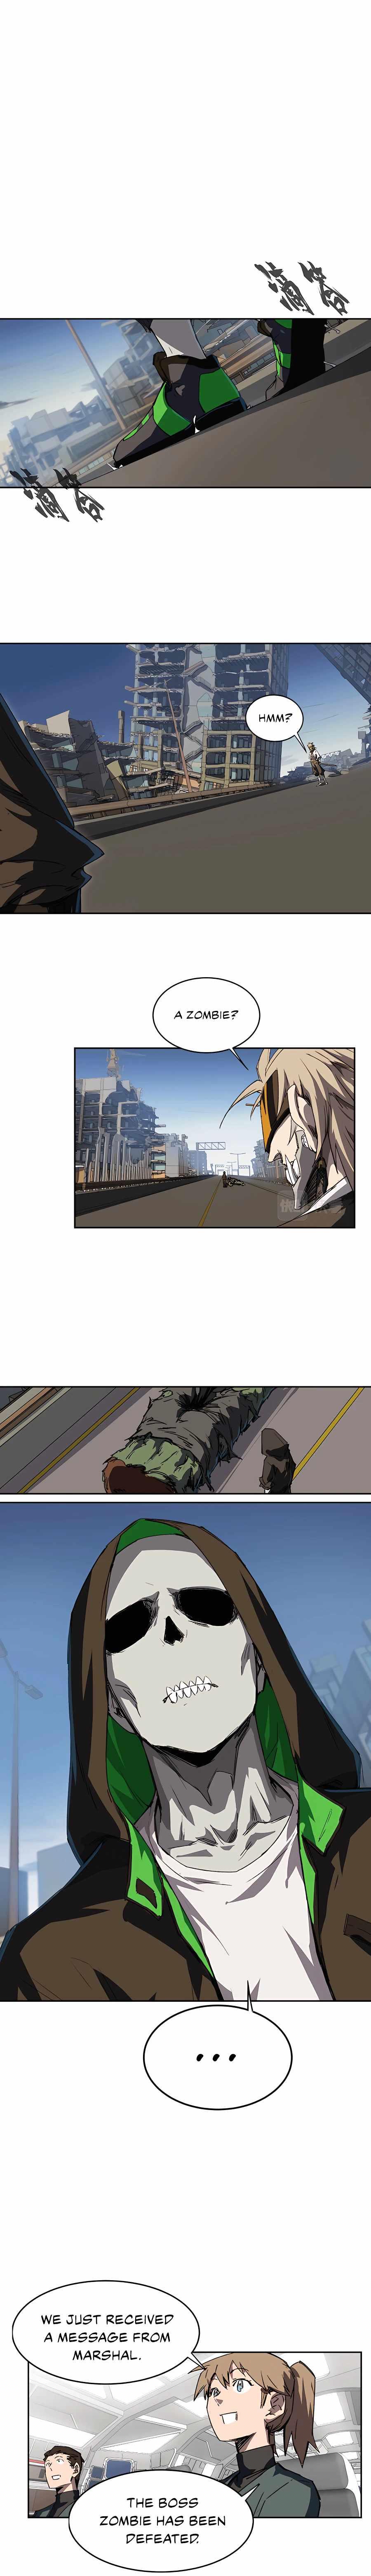 Mr. Zombie Chapter 4 page 12 - Mangakakalot